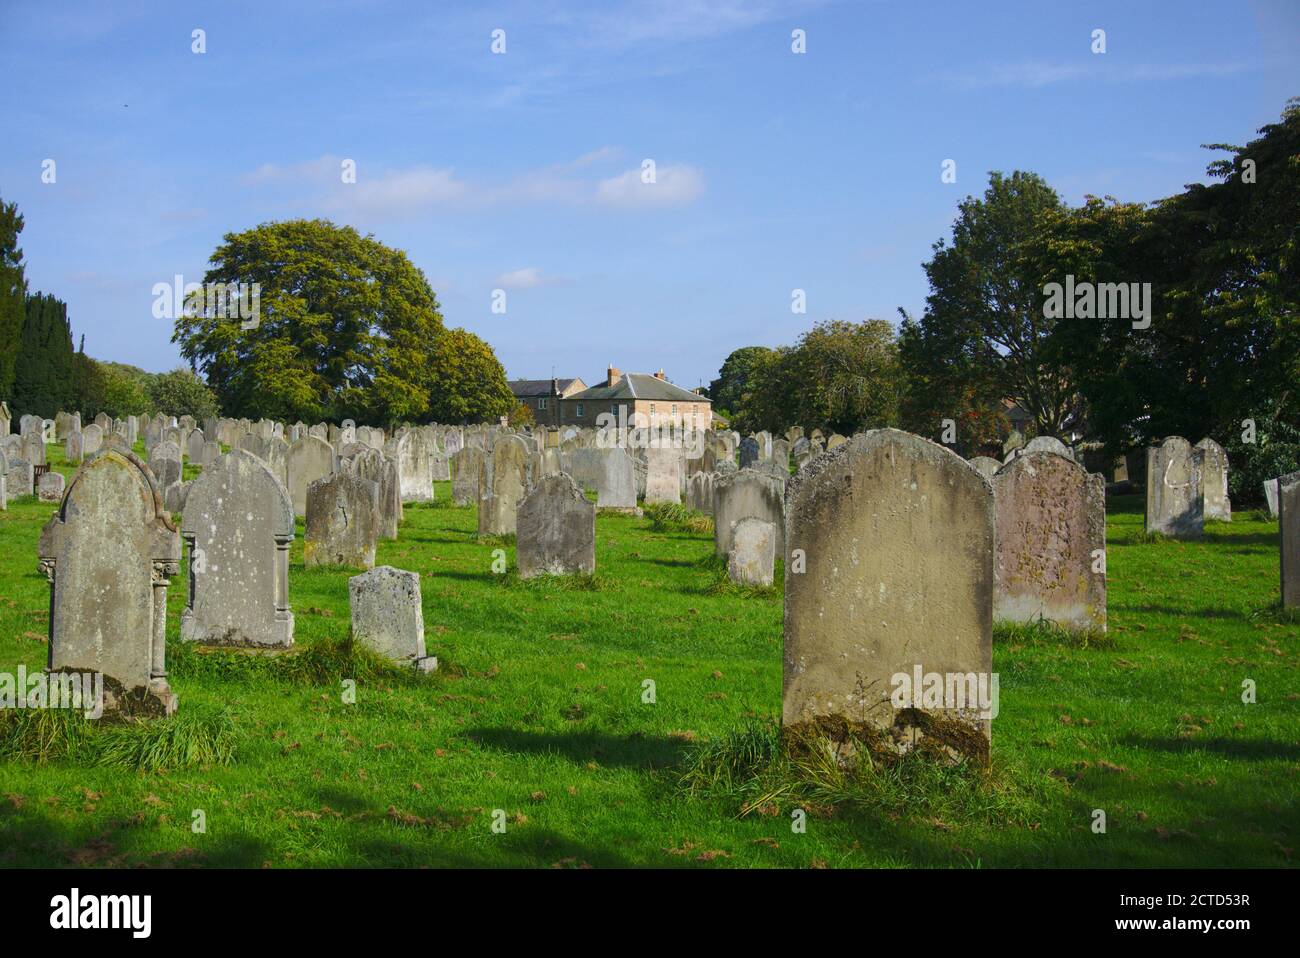 Graveyard of St Cuthbert's Parish Church, Norham, Northumberland, England, UK. Stock Photo